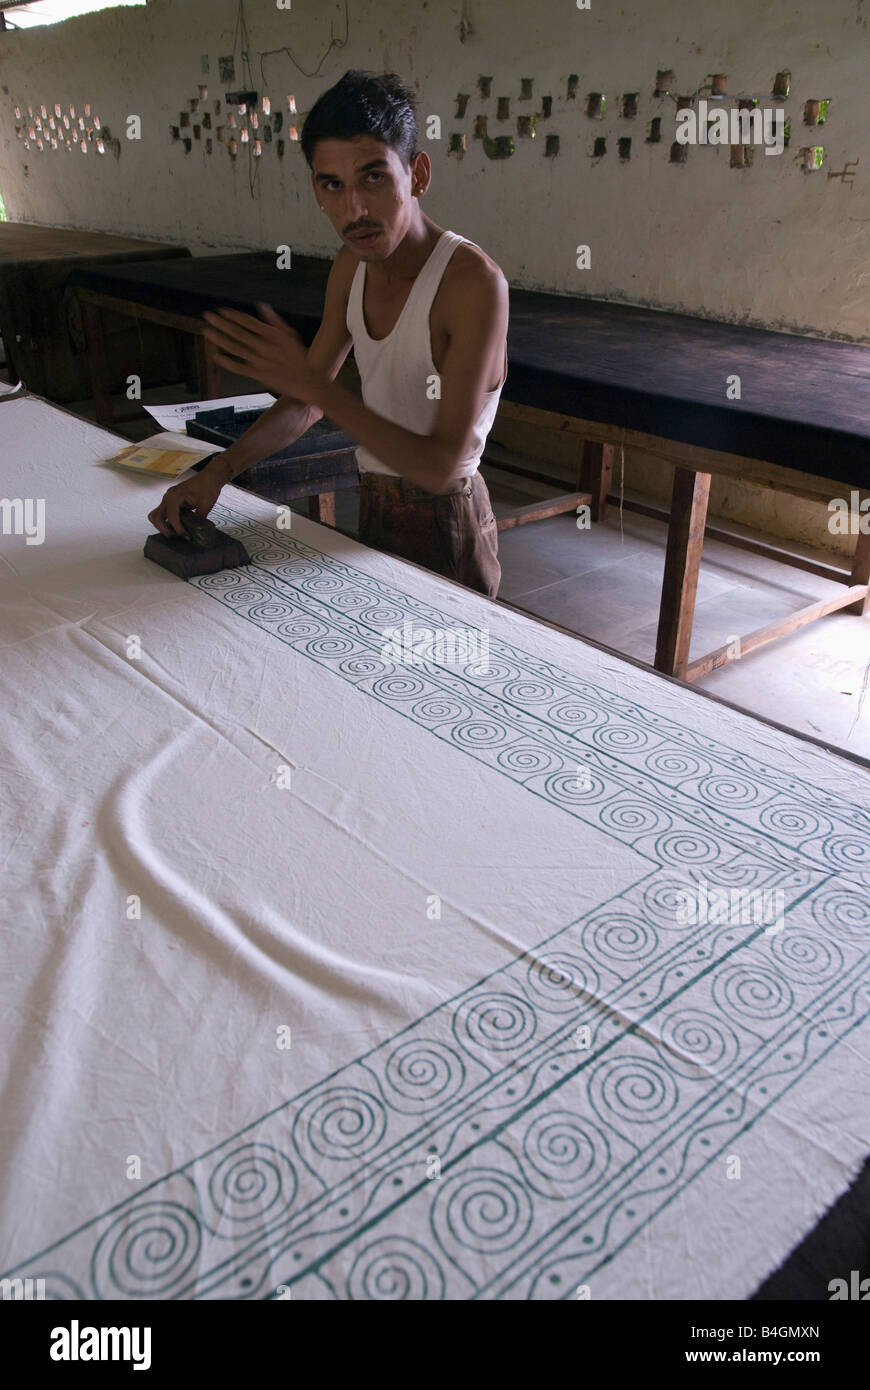 Indien Rajasthan Pushkar Block drucken umfasst Druck des Tuches mit hölzernen Blöcken Stockfoto